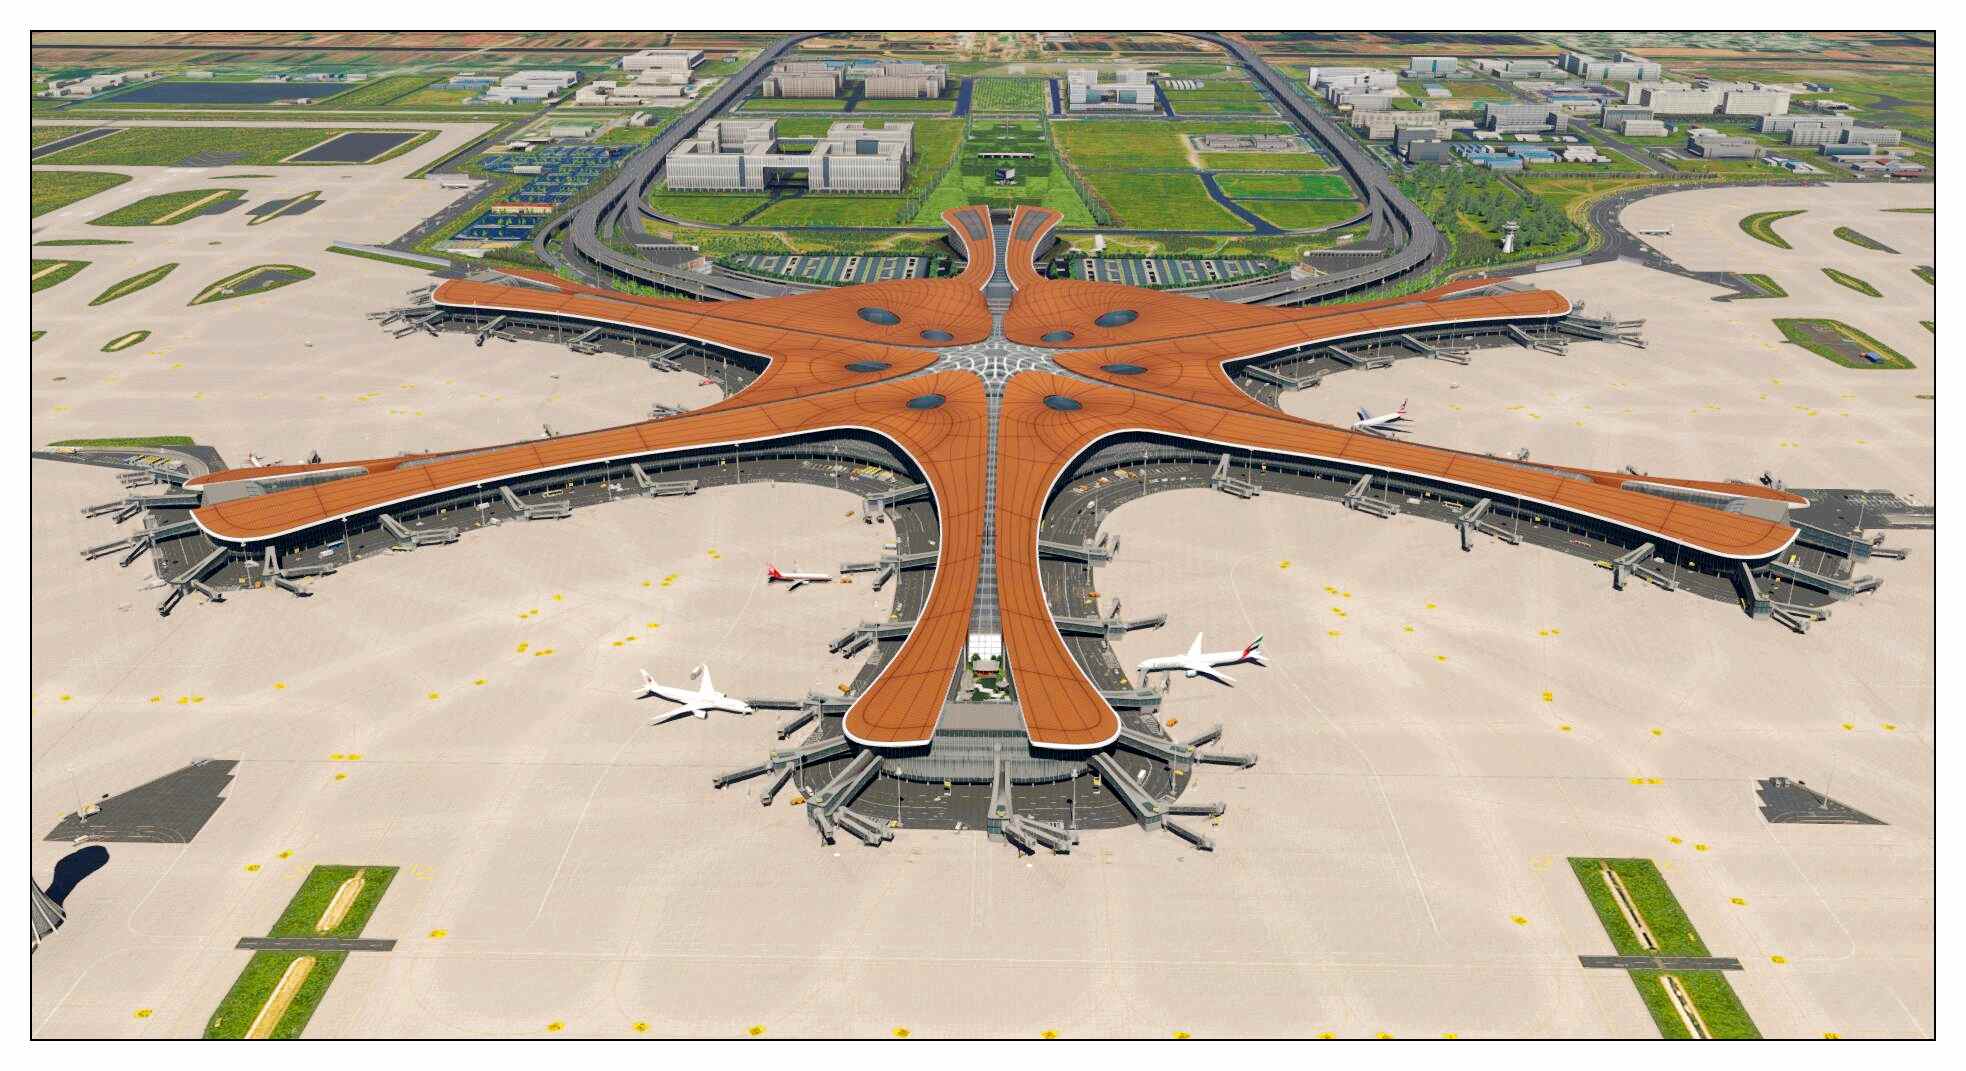 【X-Plane】ZBAD北京大兴国际机场-正式发布-8435 